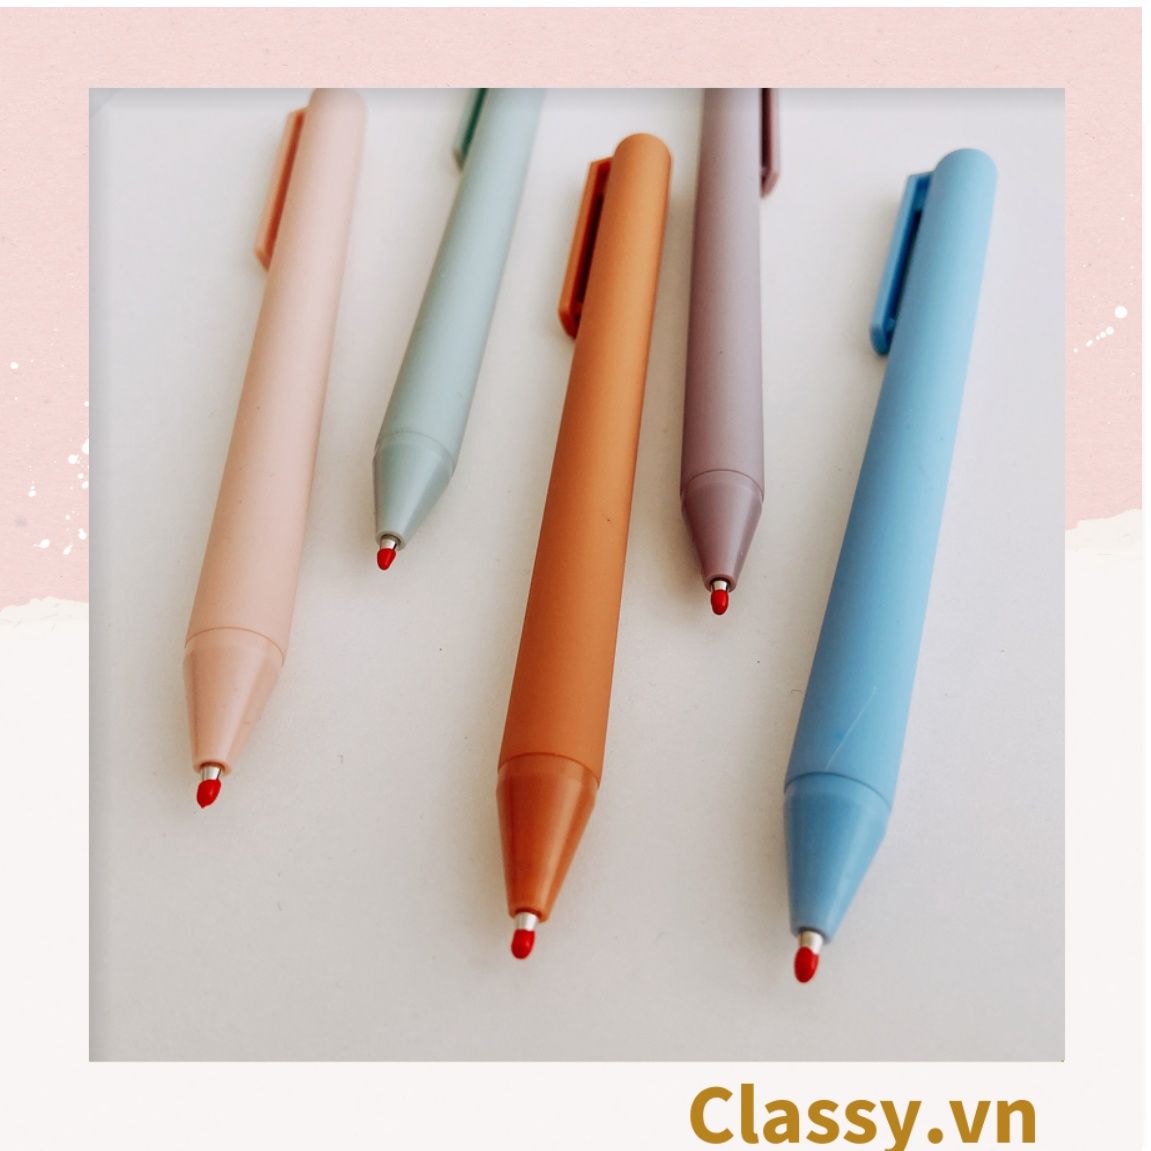  Bút gel màu trơn 0.5mm, tone pastel nổi bật, thích hợp cho sinh viên/nhân viên văn phòng PK1143 